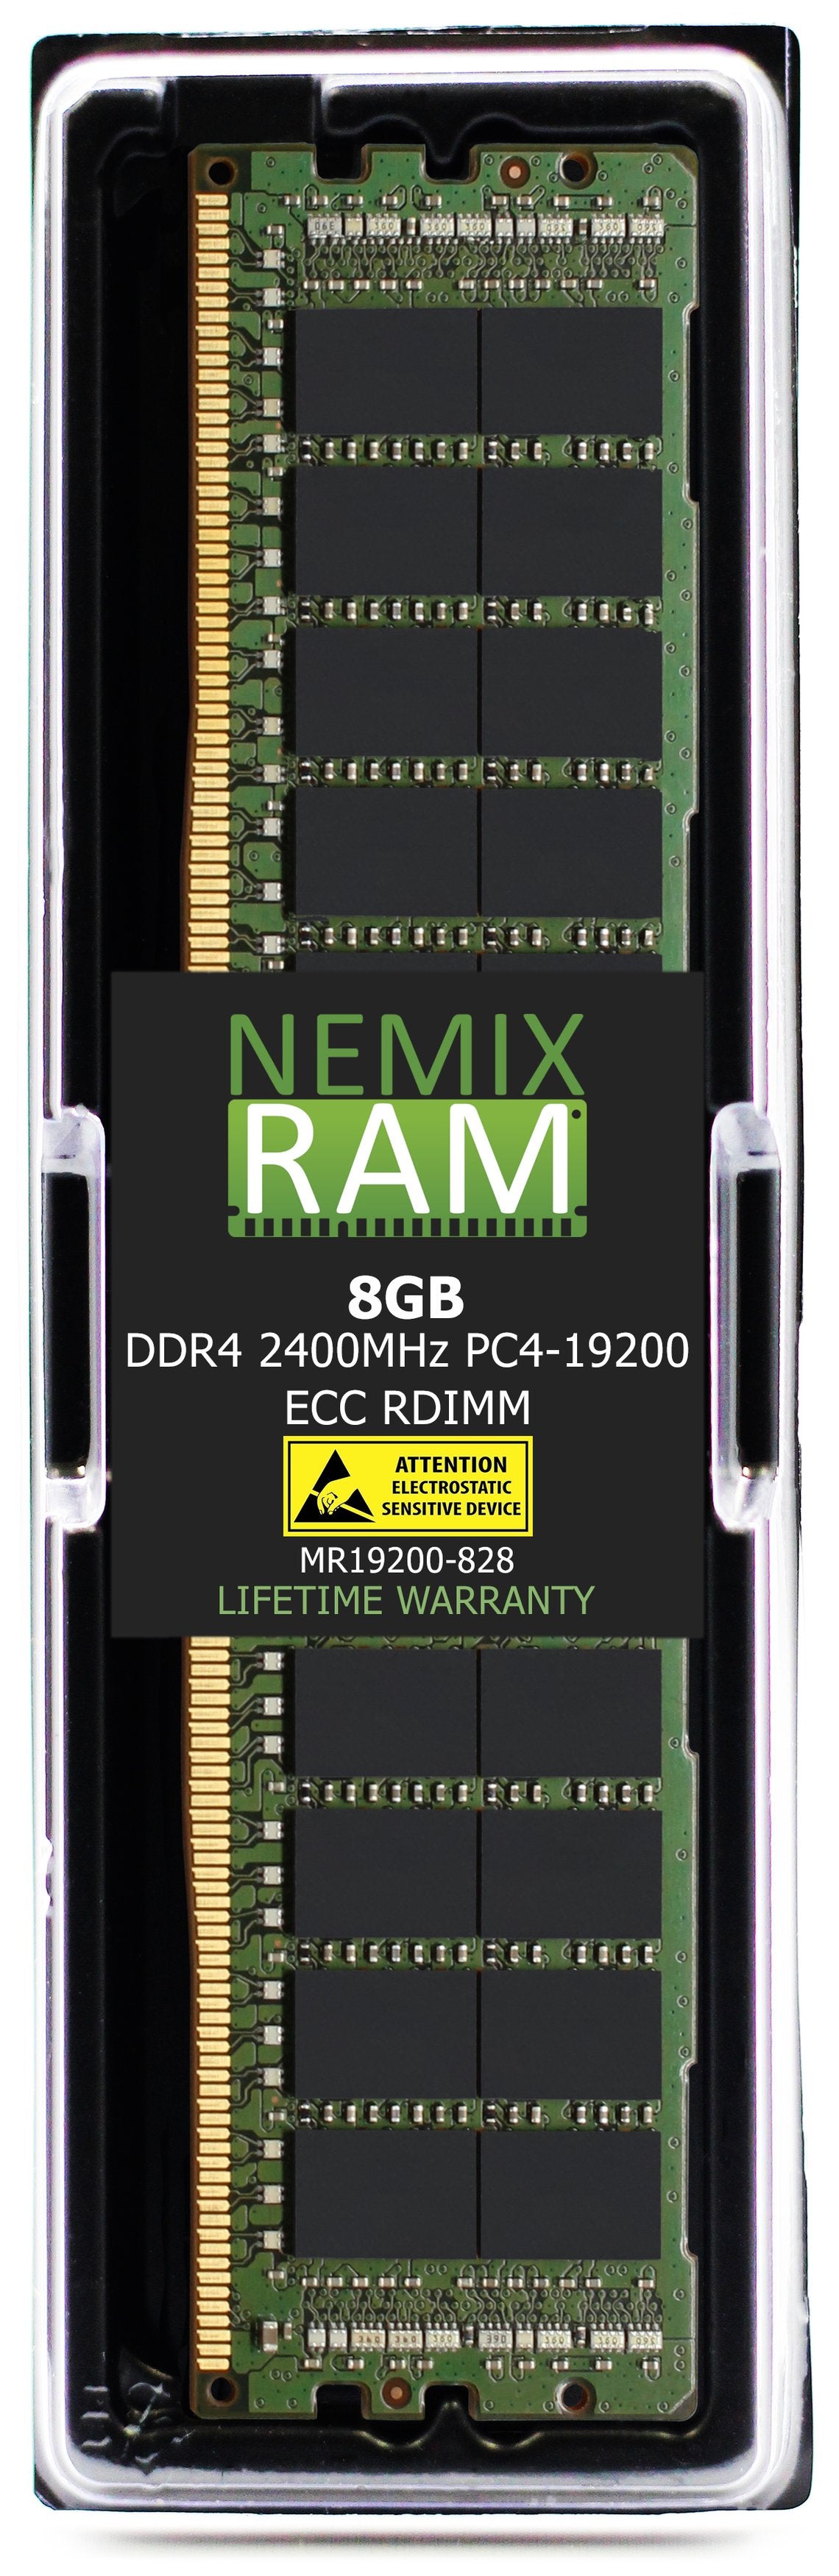 8GB DDR4 2400MHZ PC4-19200 RDIMM Compatible with Supermicro MEM-DR480L-CL05-ER24